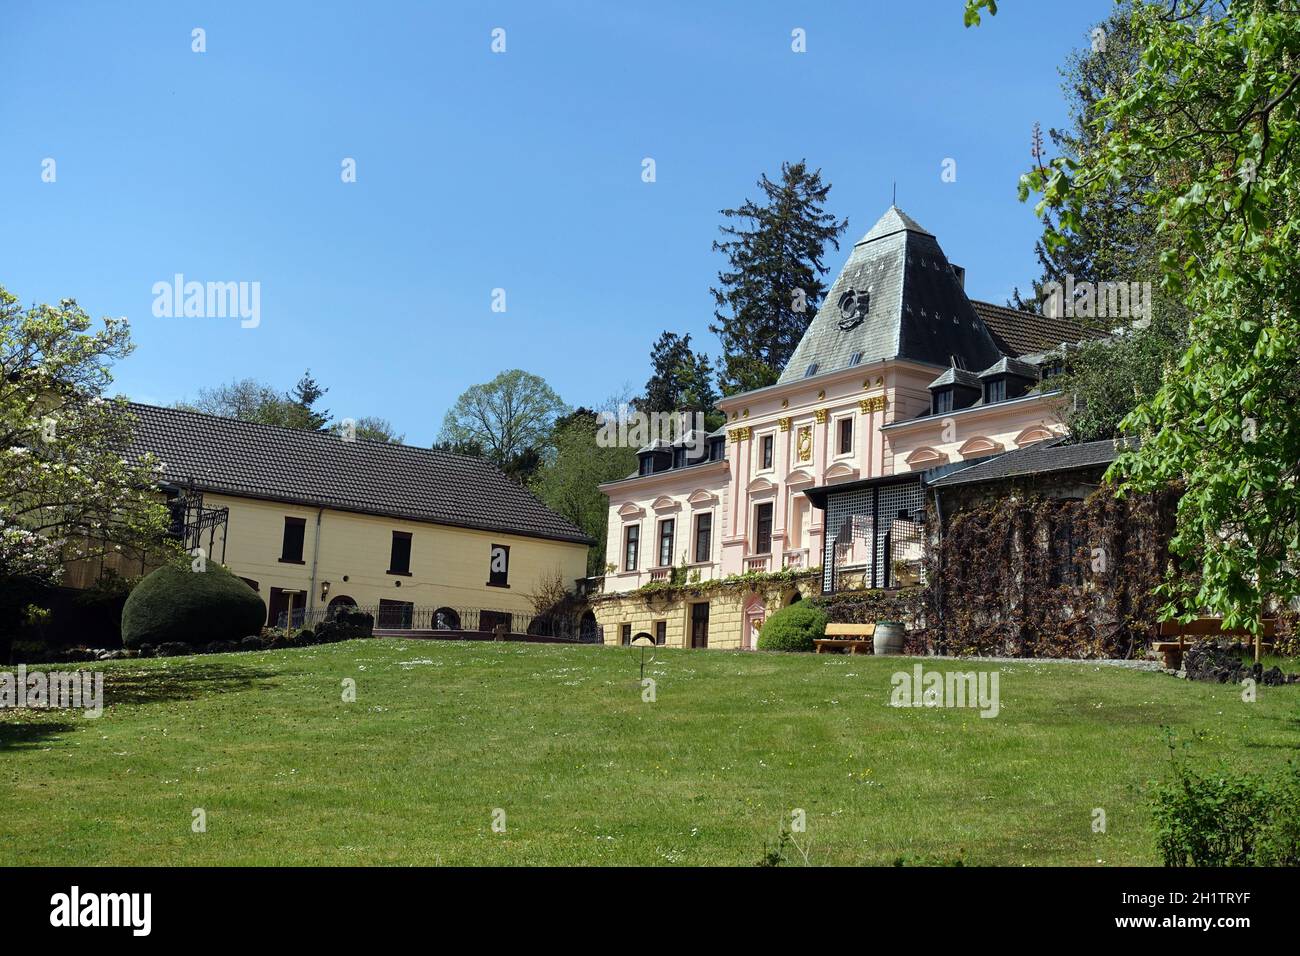 Burg Kommern, Baudenkmal aus dem 14. Jahrhundert, Mechernich, Nordrhein-Westfalen, Deutschland Stock Photo